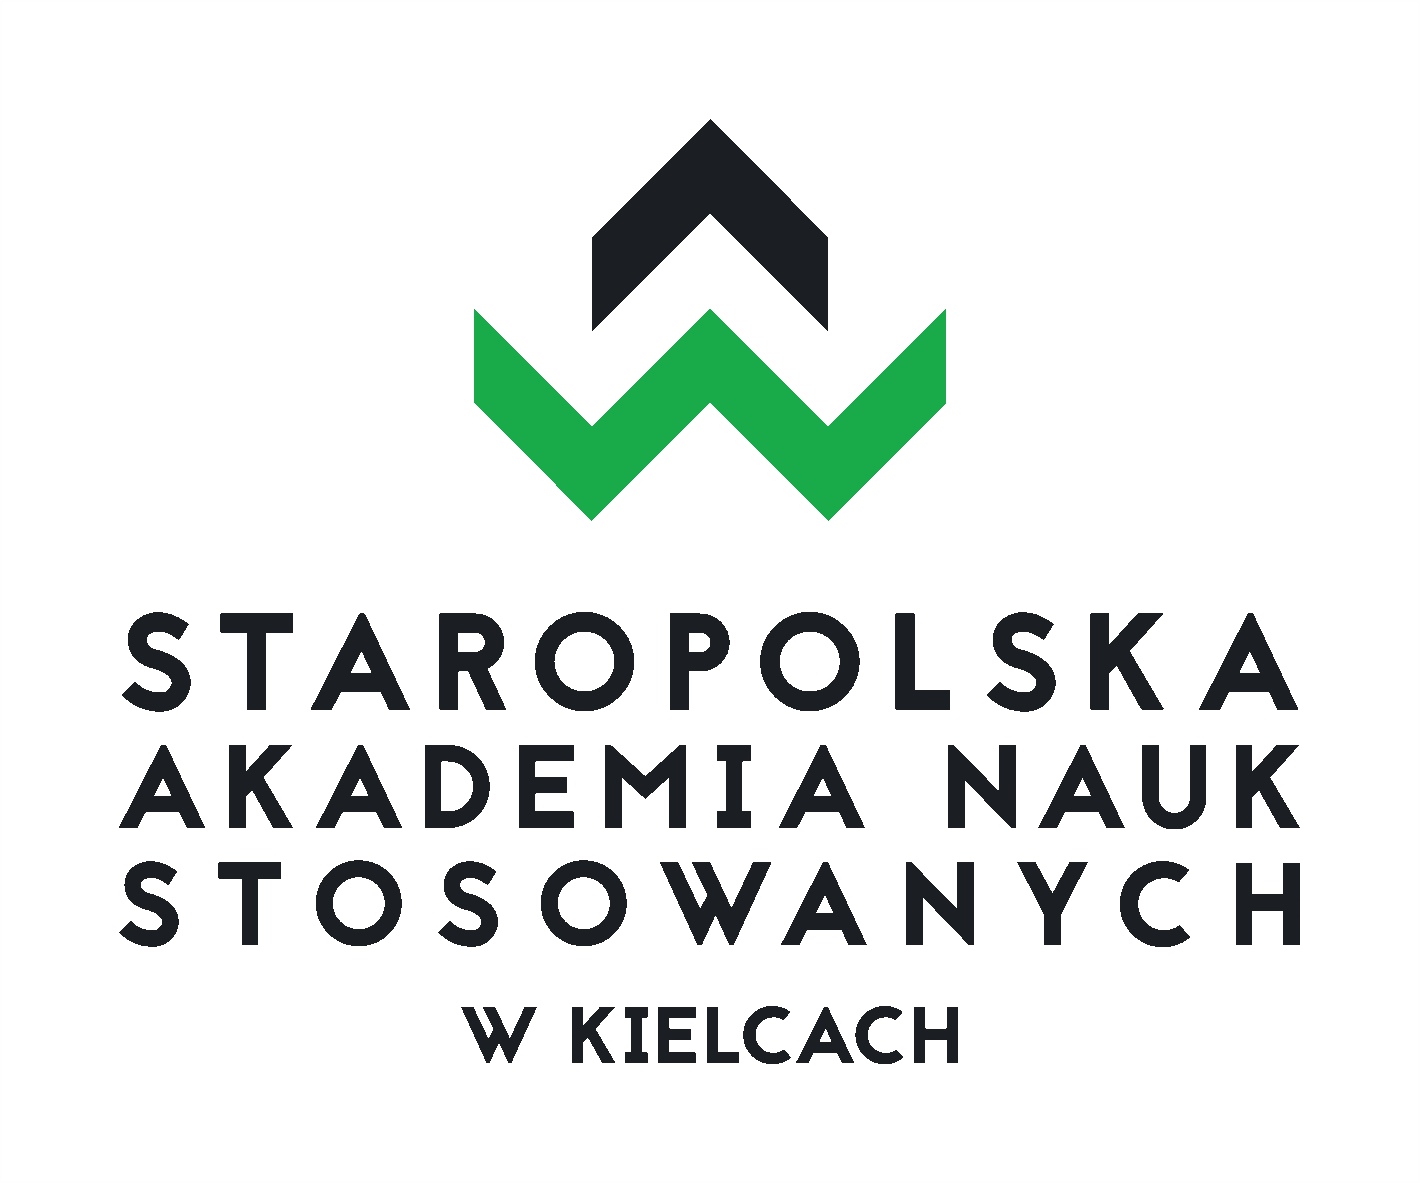 Staropolska Akademia Nauk Stosowanych w Kielcach logo